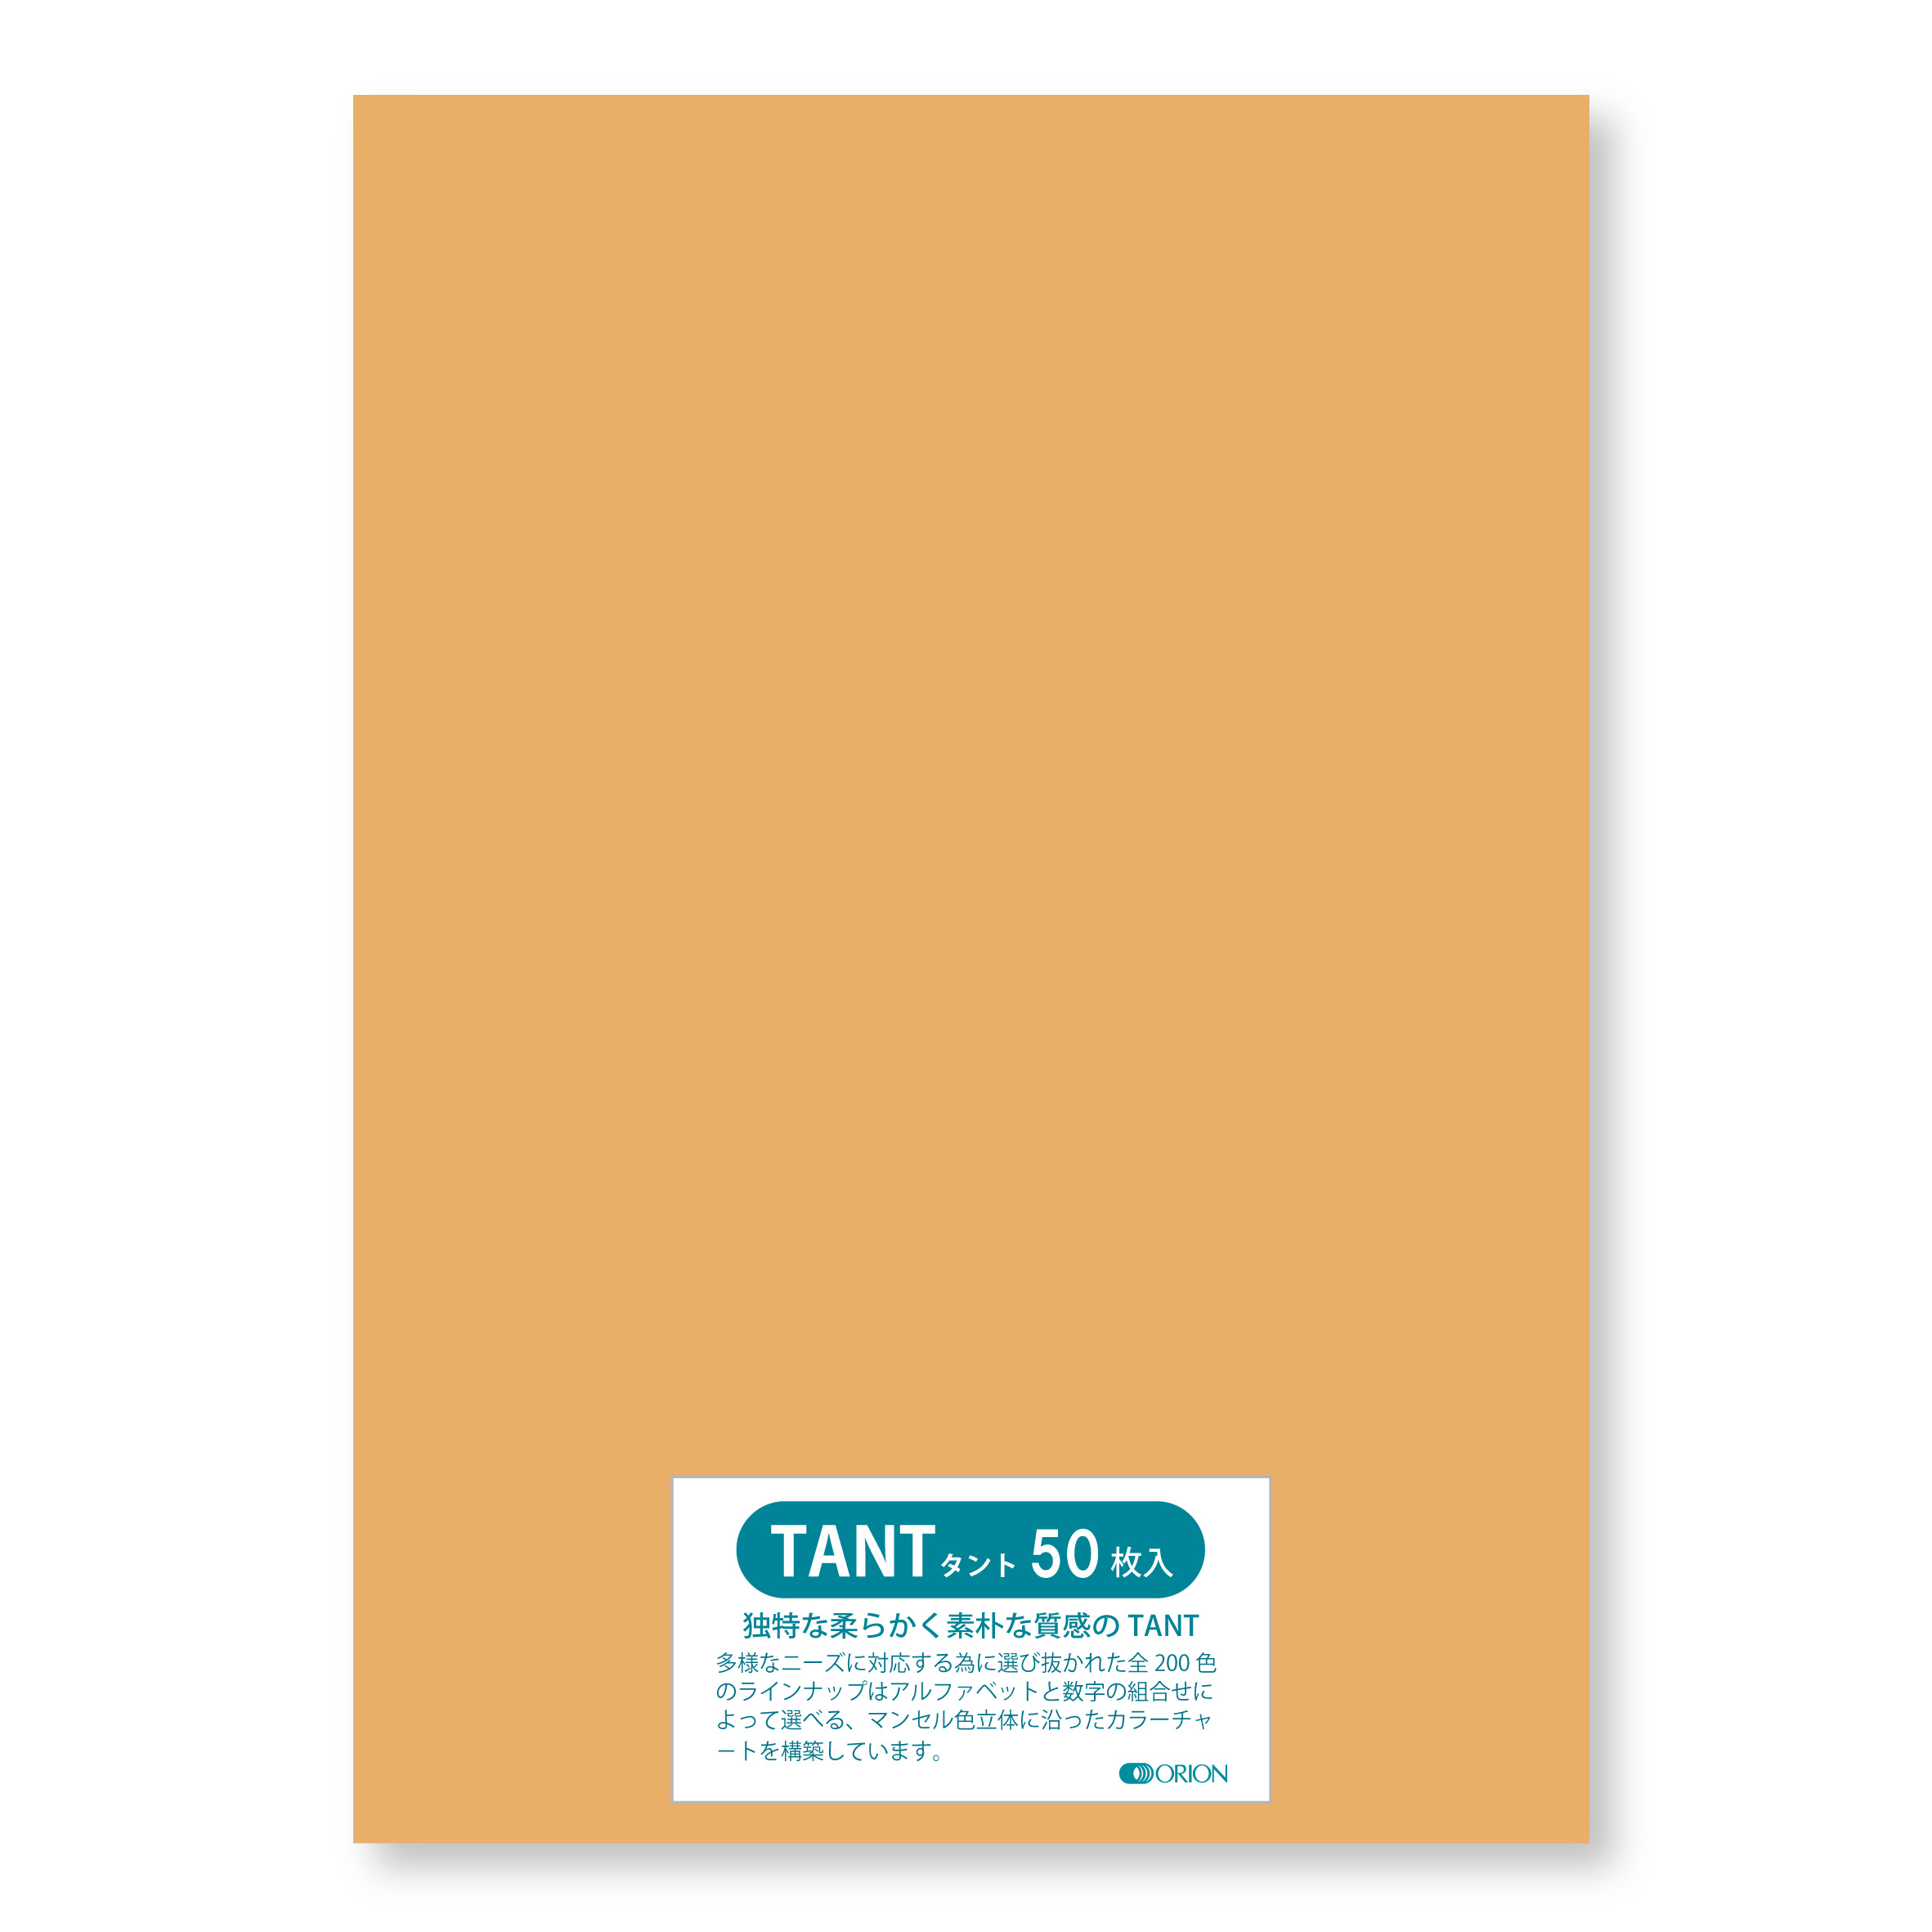 オリオン 色画用紙 タント 100kg A2 日本限定 594×420 選べる50色 毎日激安特売で 営業中です 50枚入り 厚さ 0.16 Ｌ５５